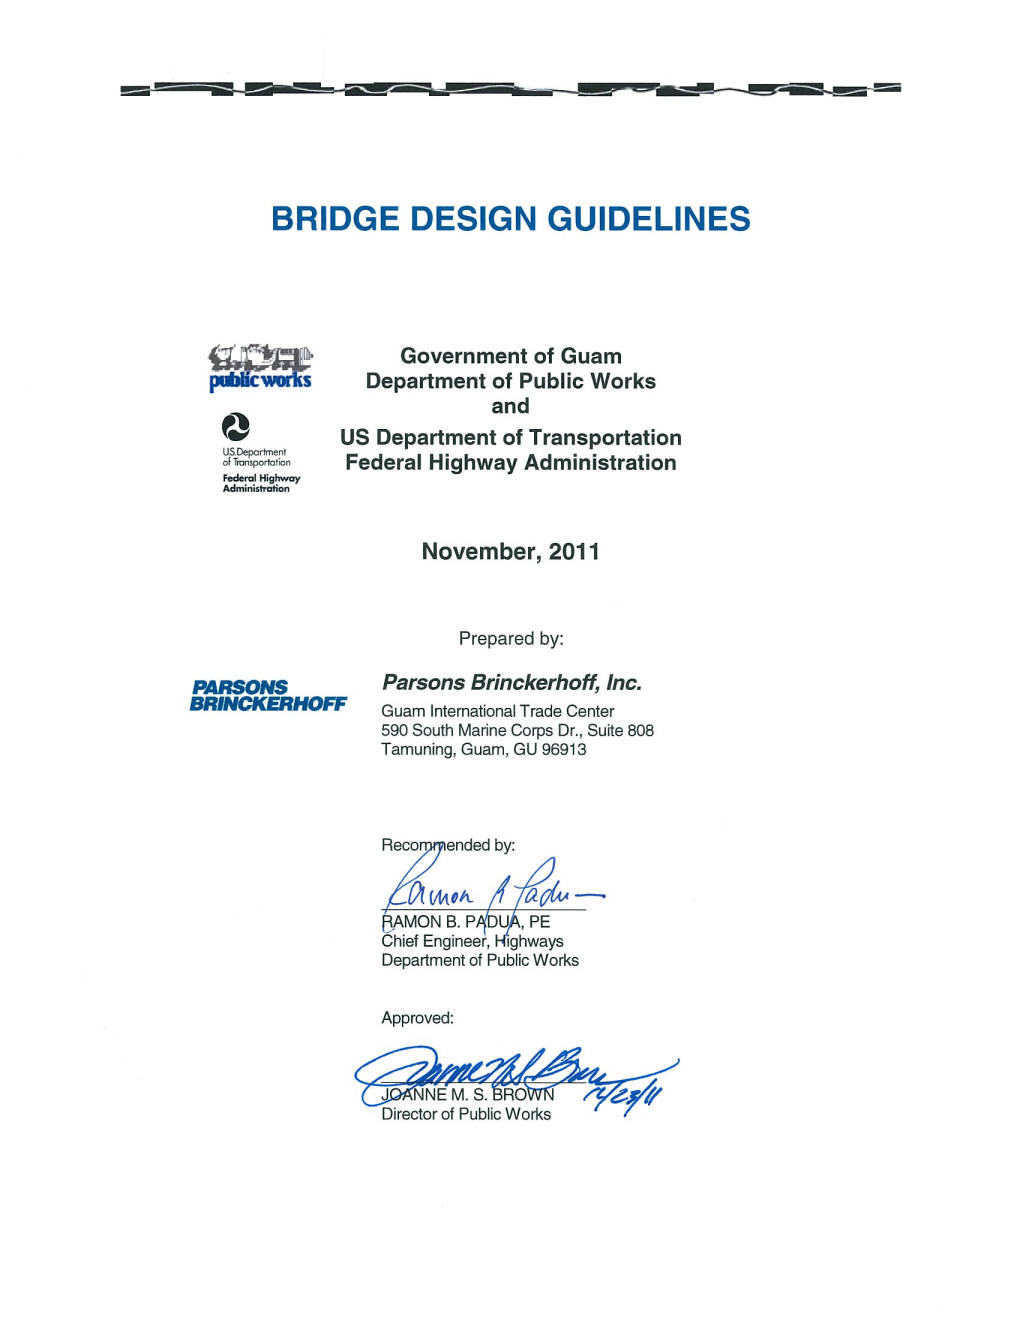 Bridge Design Guidelines Guam Department of Public Works